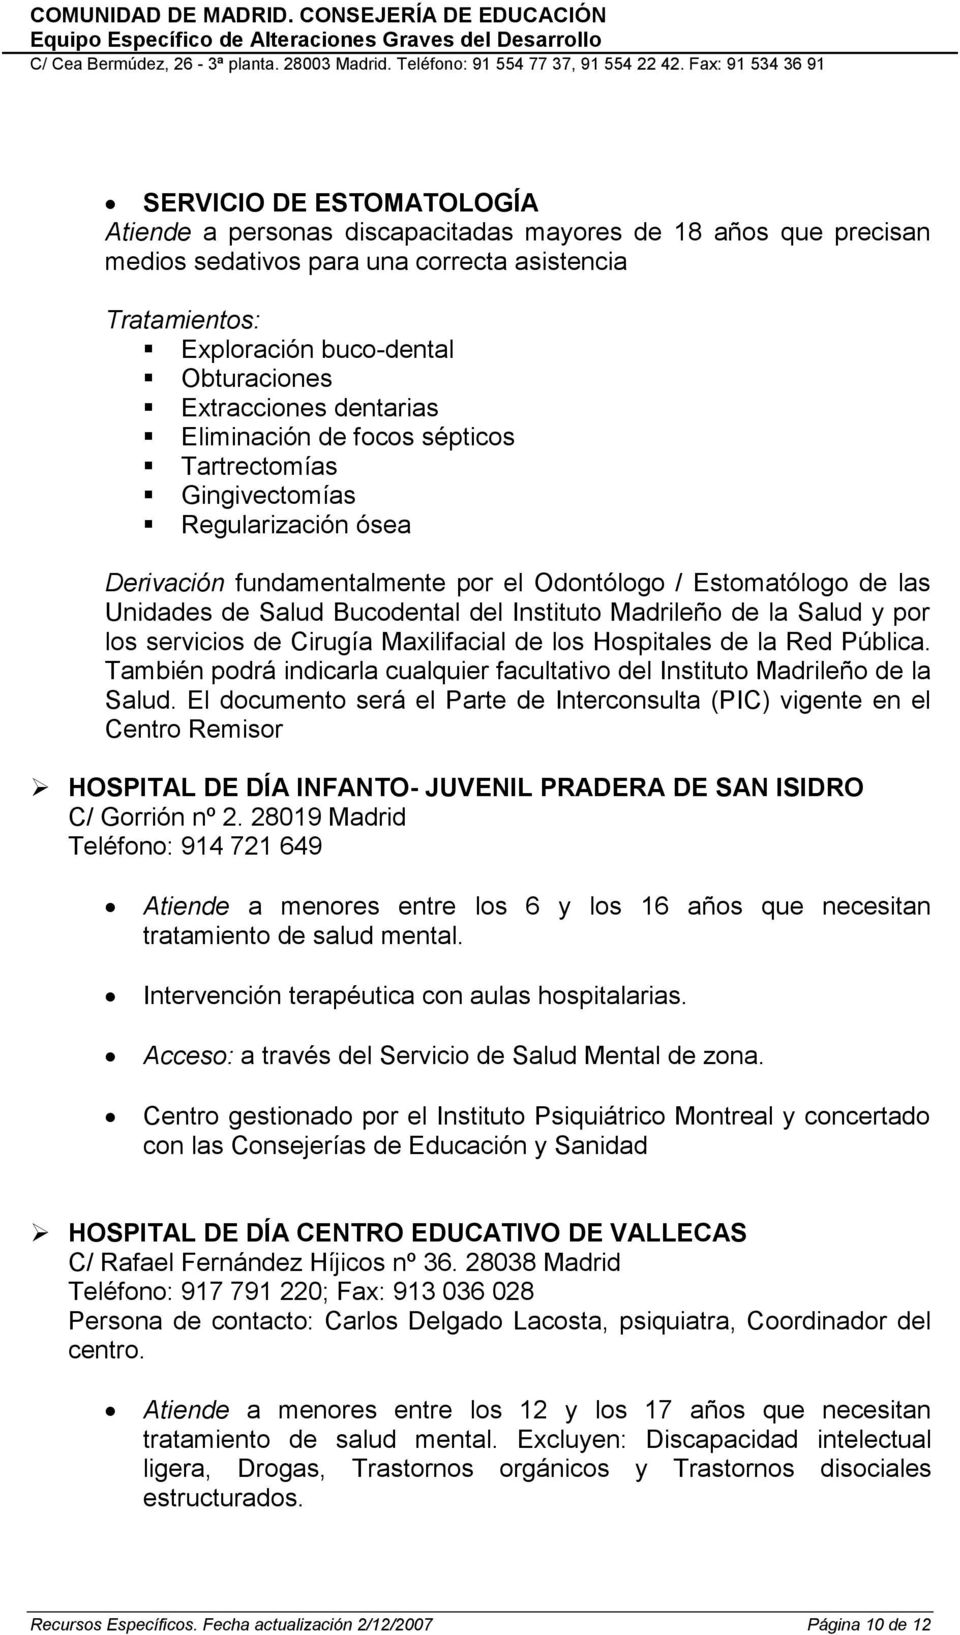 del Instituto Madrileño de la Salud y por los servicios de Cirugía Maxilifacial de los Hospitales de la Red Pública. También podrá indicarla cualquier facultativo del Instituto Madrileño de la Salud.